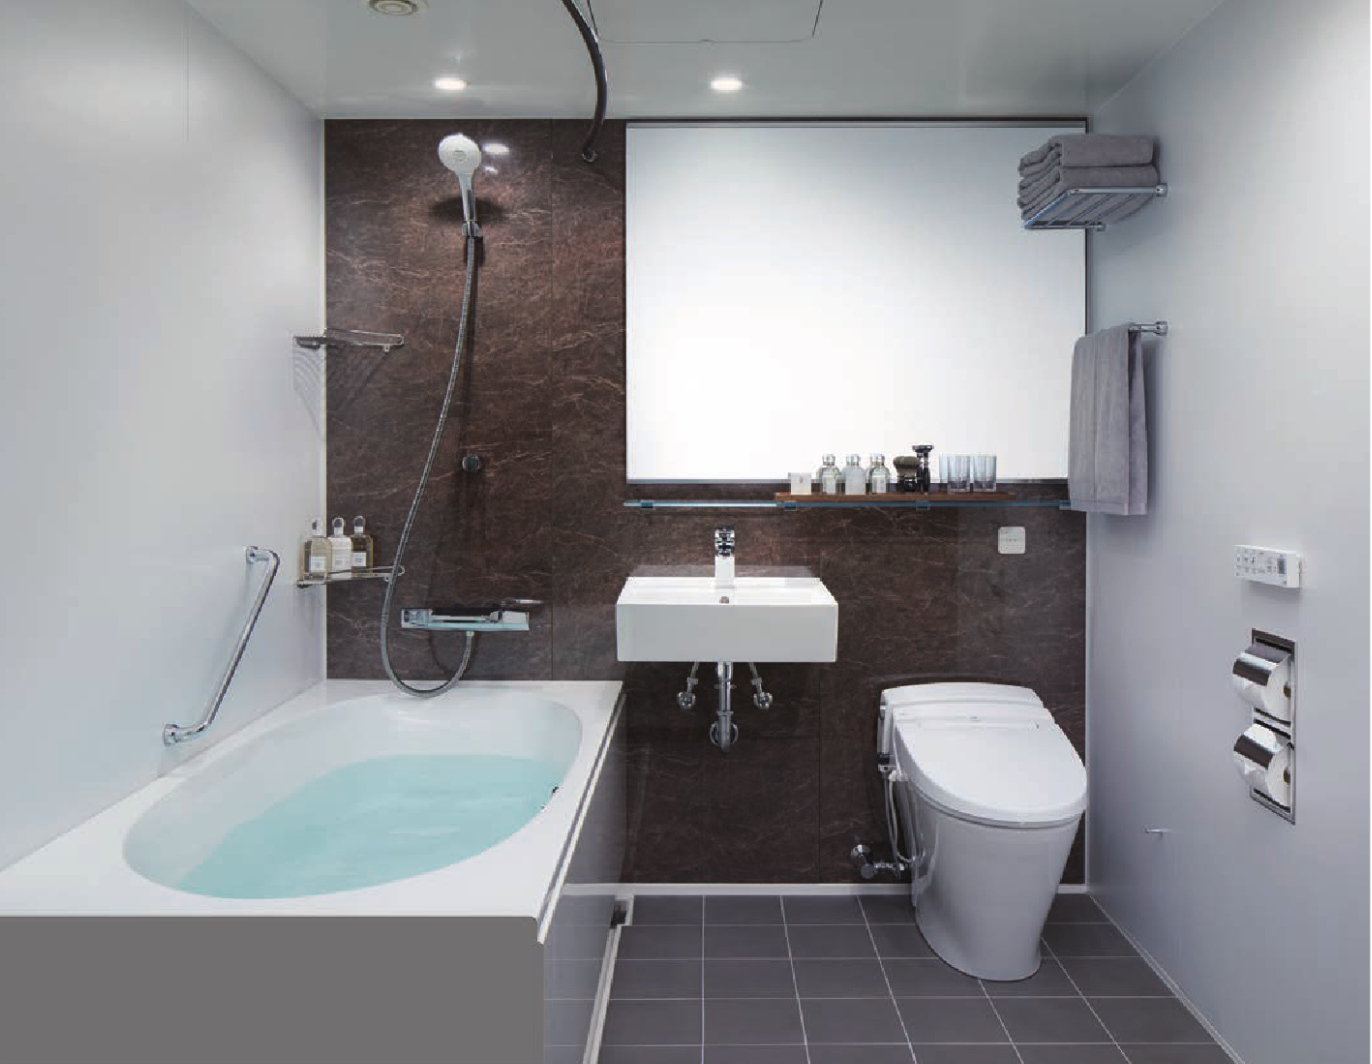 ホテルライクな3点式ユニットバス 工事パック | 浴室リフォームPRO